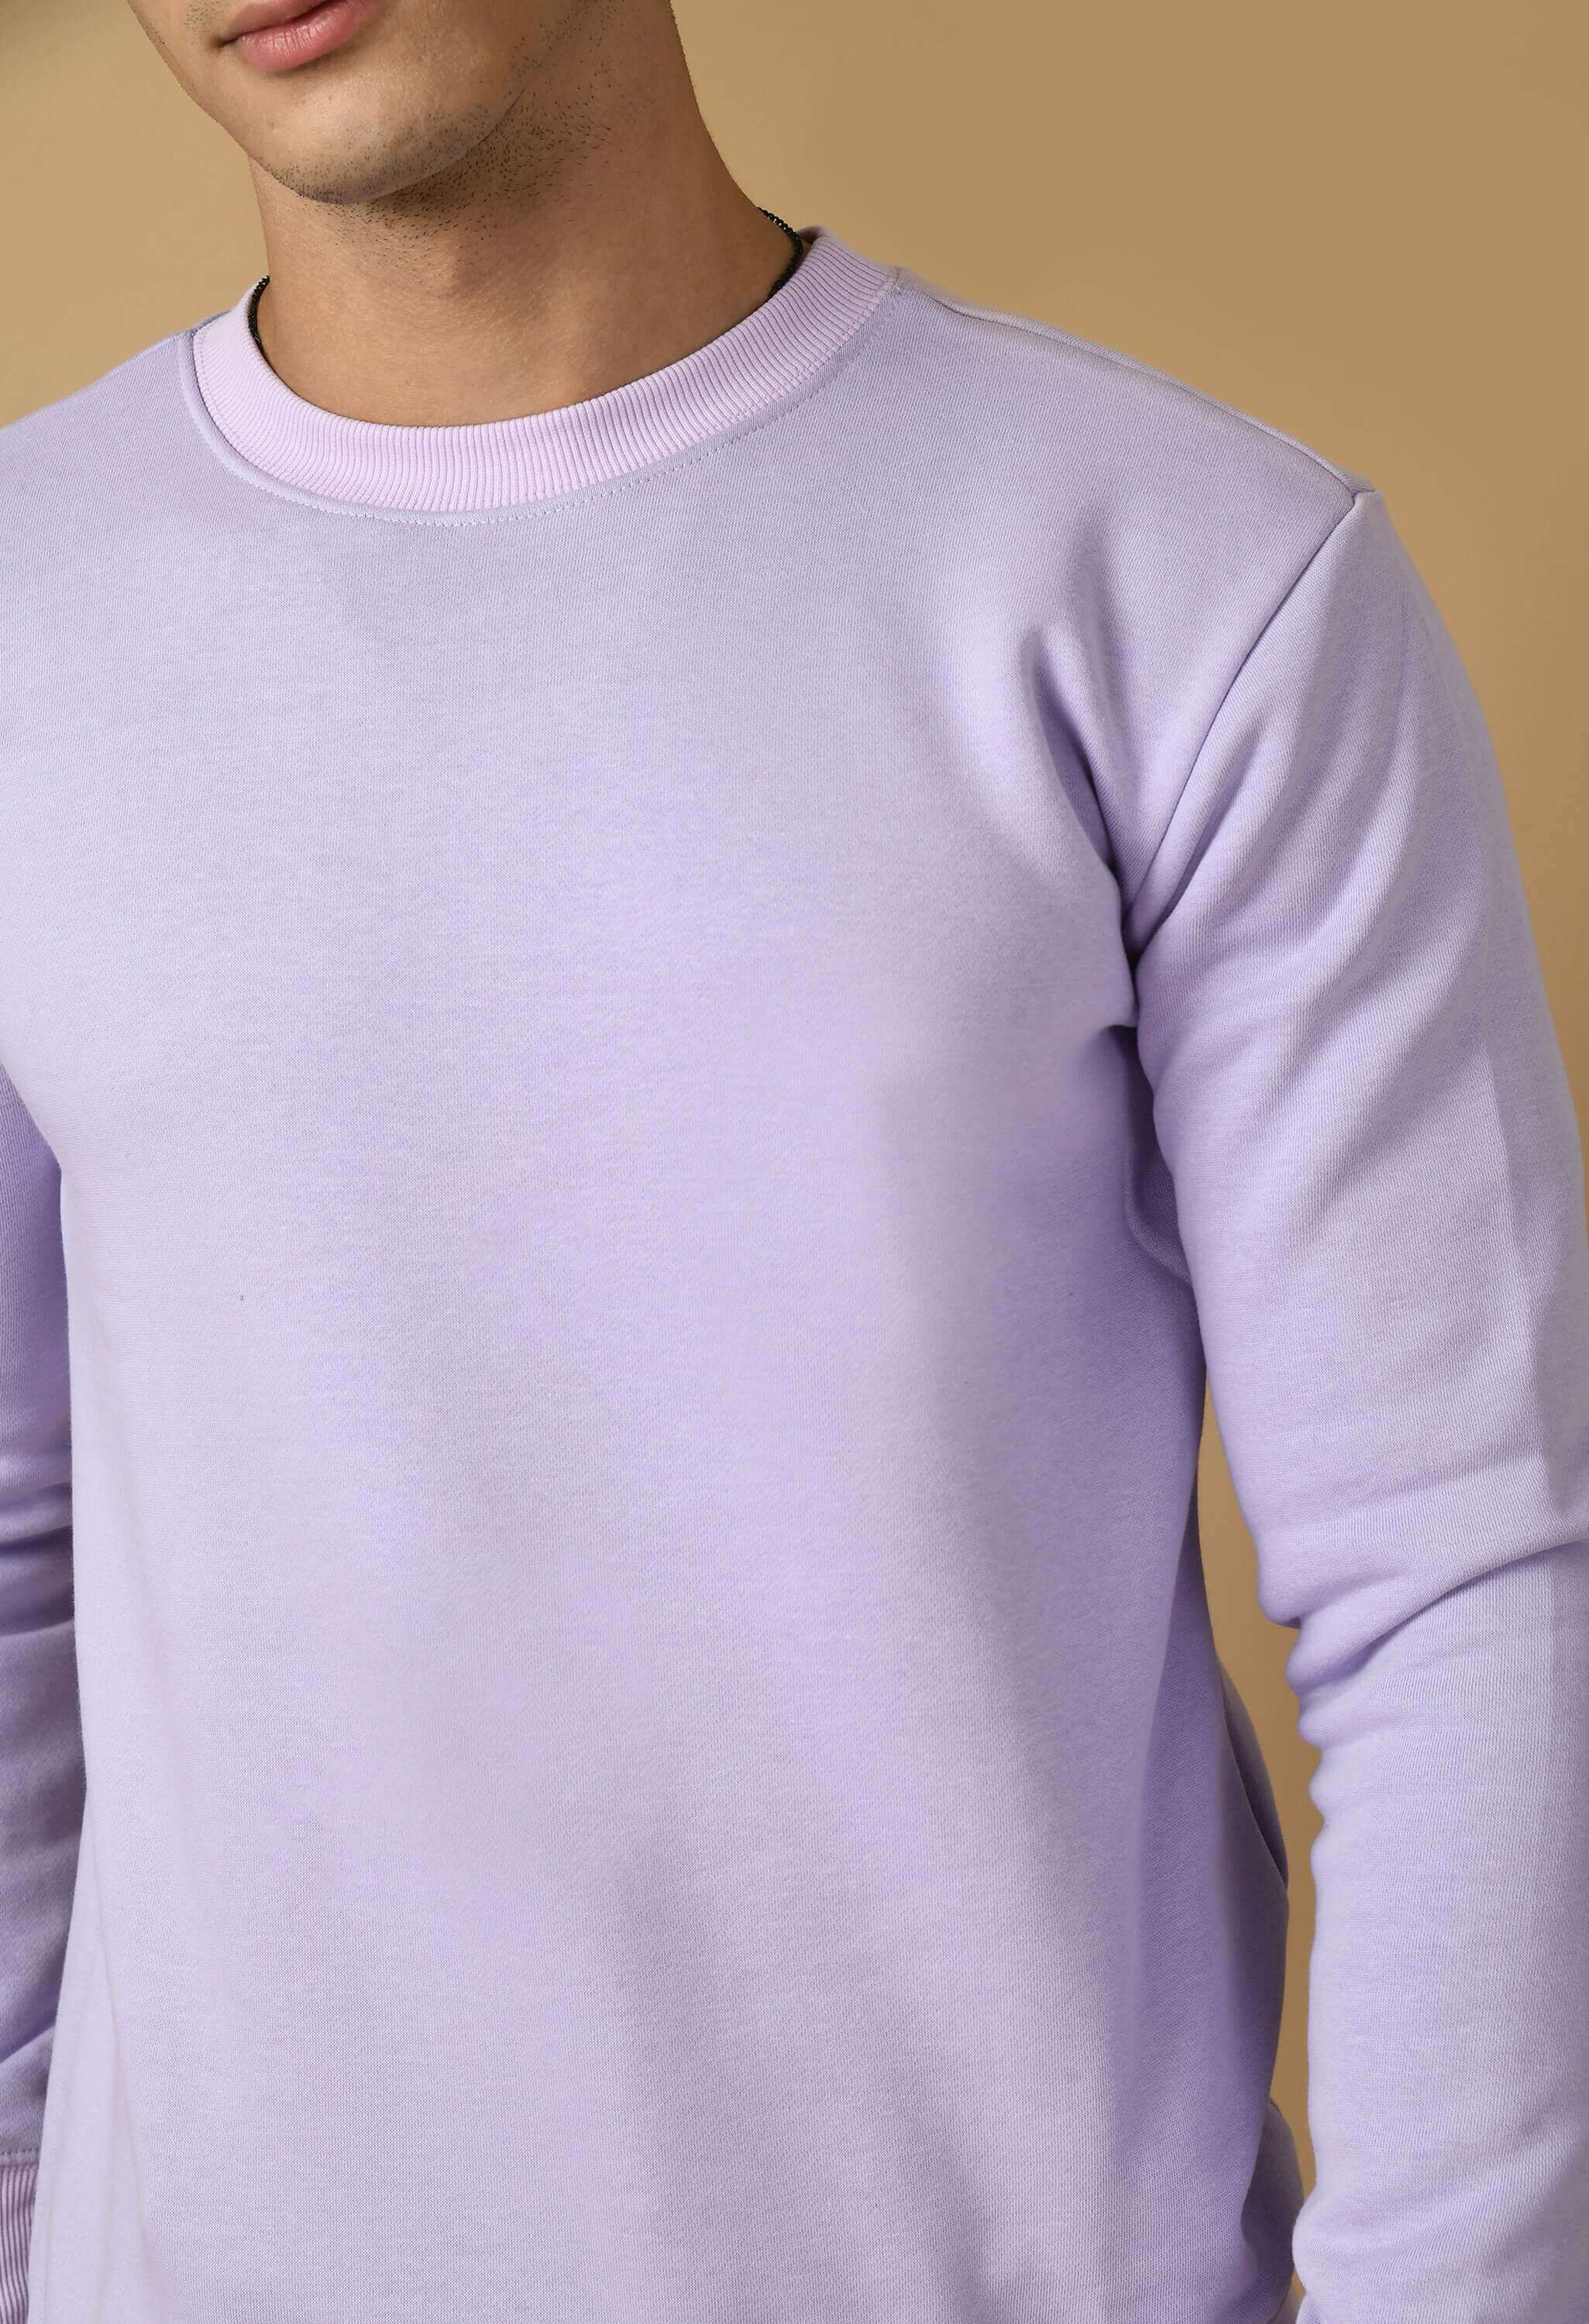 Unreal printed lavender color sweatshirt 